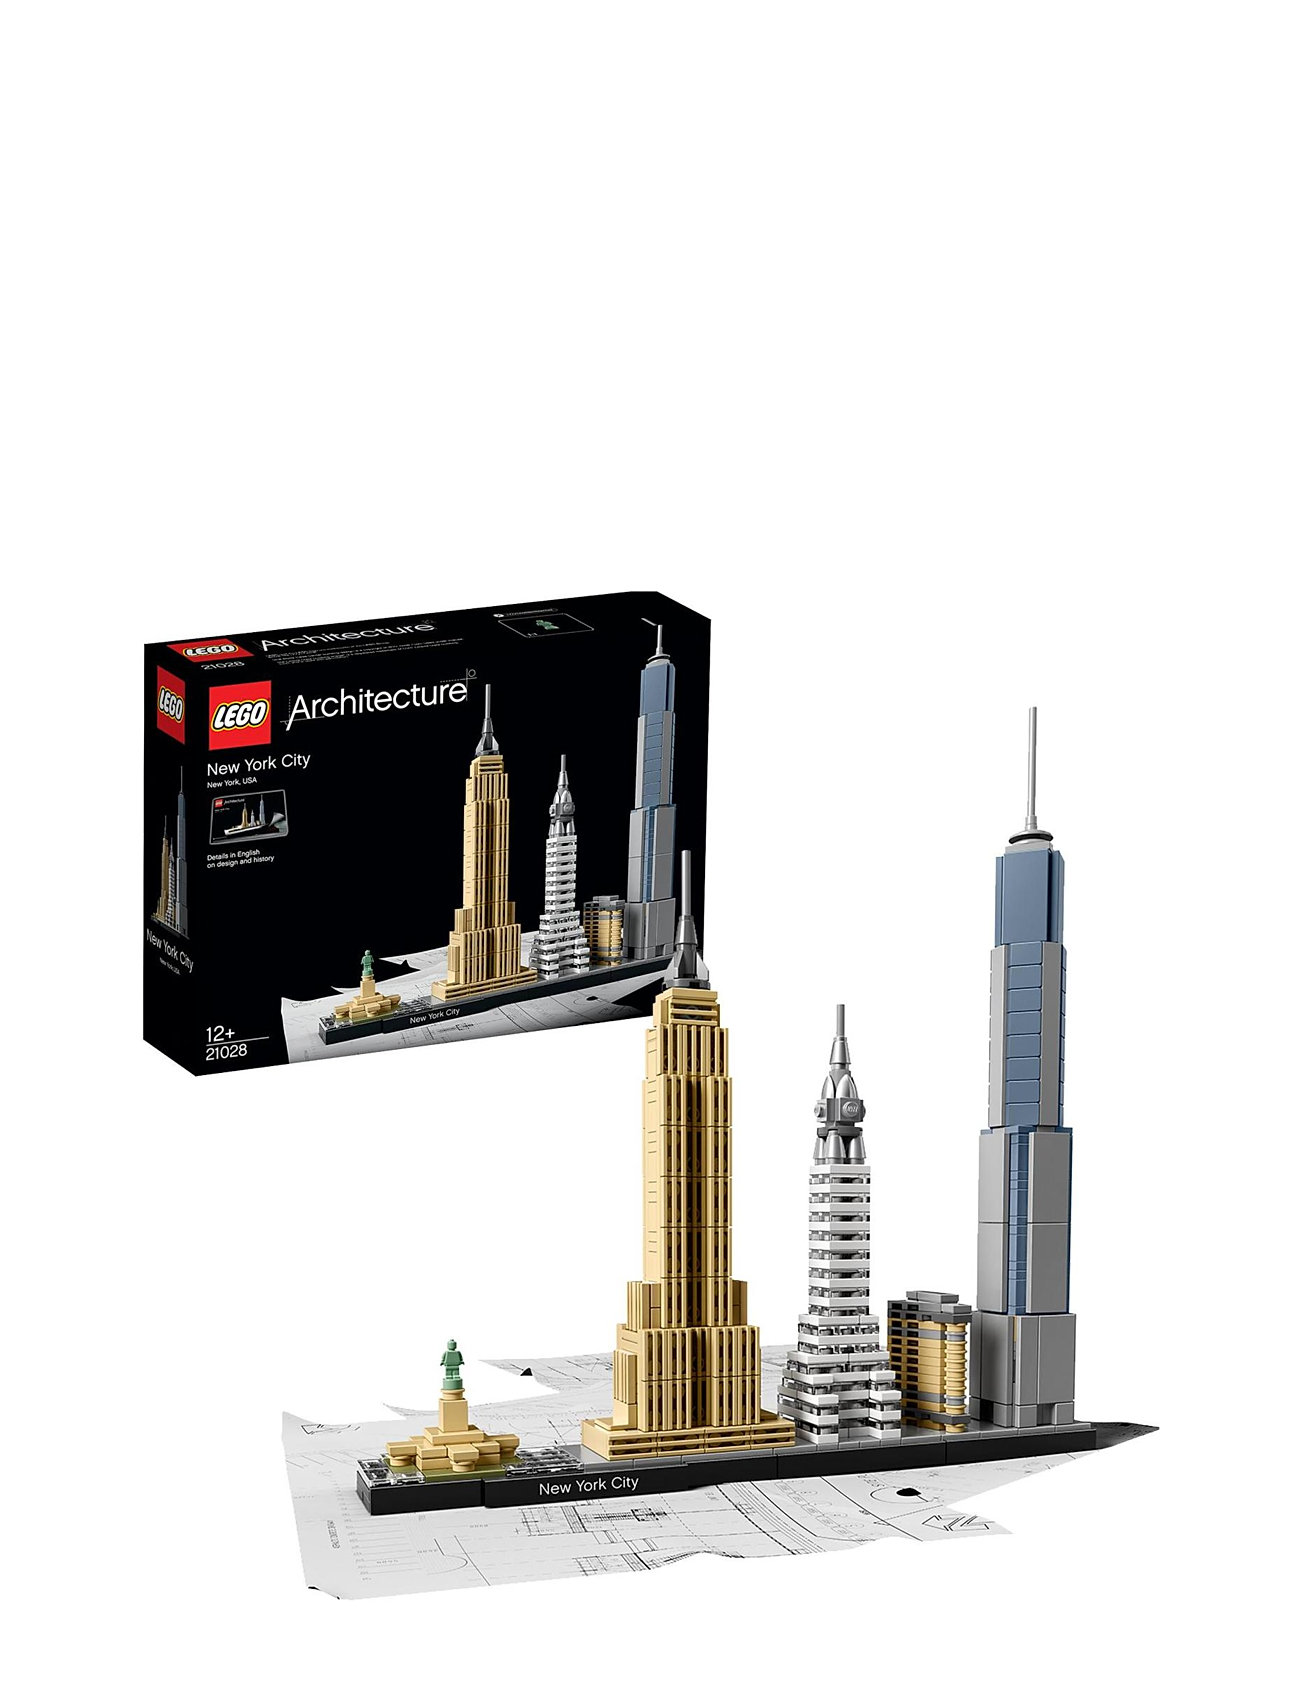 New York City Skyline Building Set Toys Lego Toys Lego Architecture Multi/patterned LEGO